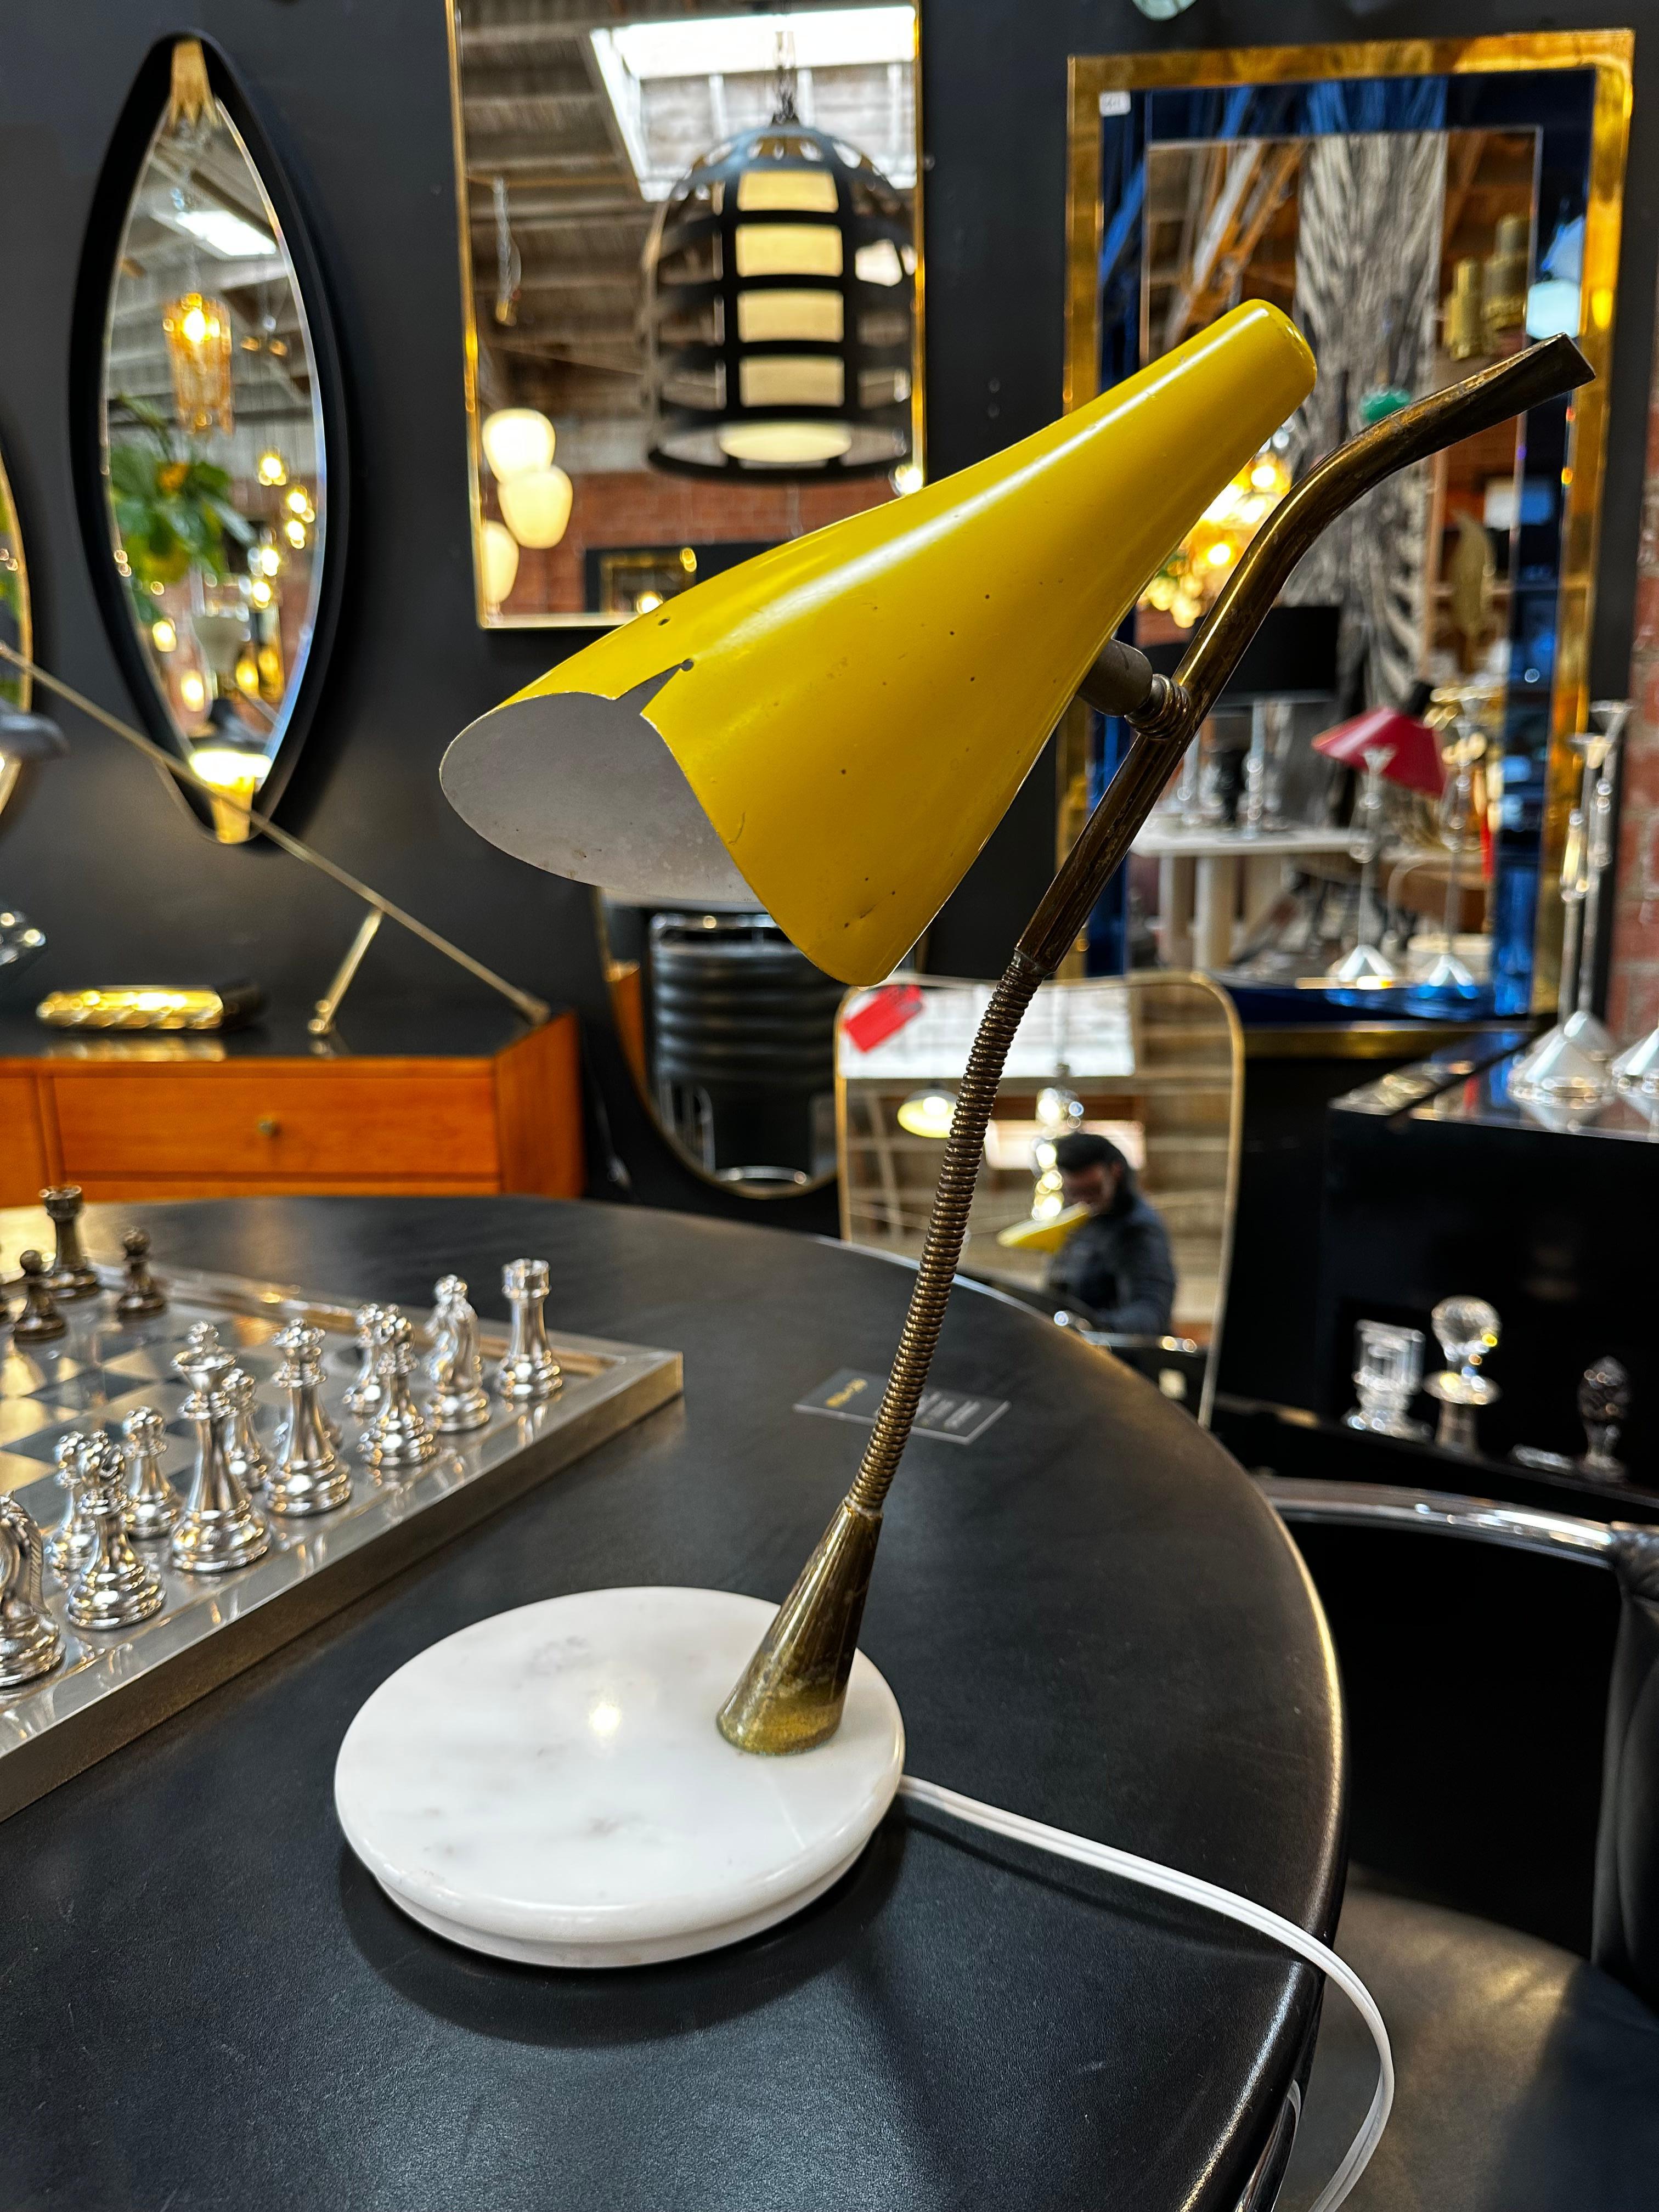 Lampe de table conçue par le designer italien Oscar Torlasco. Métal émaillé jaune, cadre en laiton et base en marbre. Abat-jour réglable.
